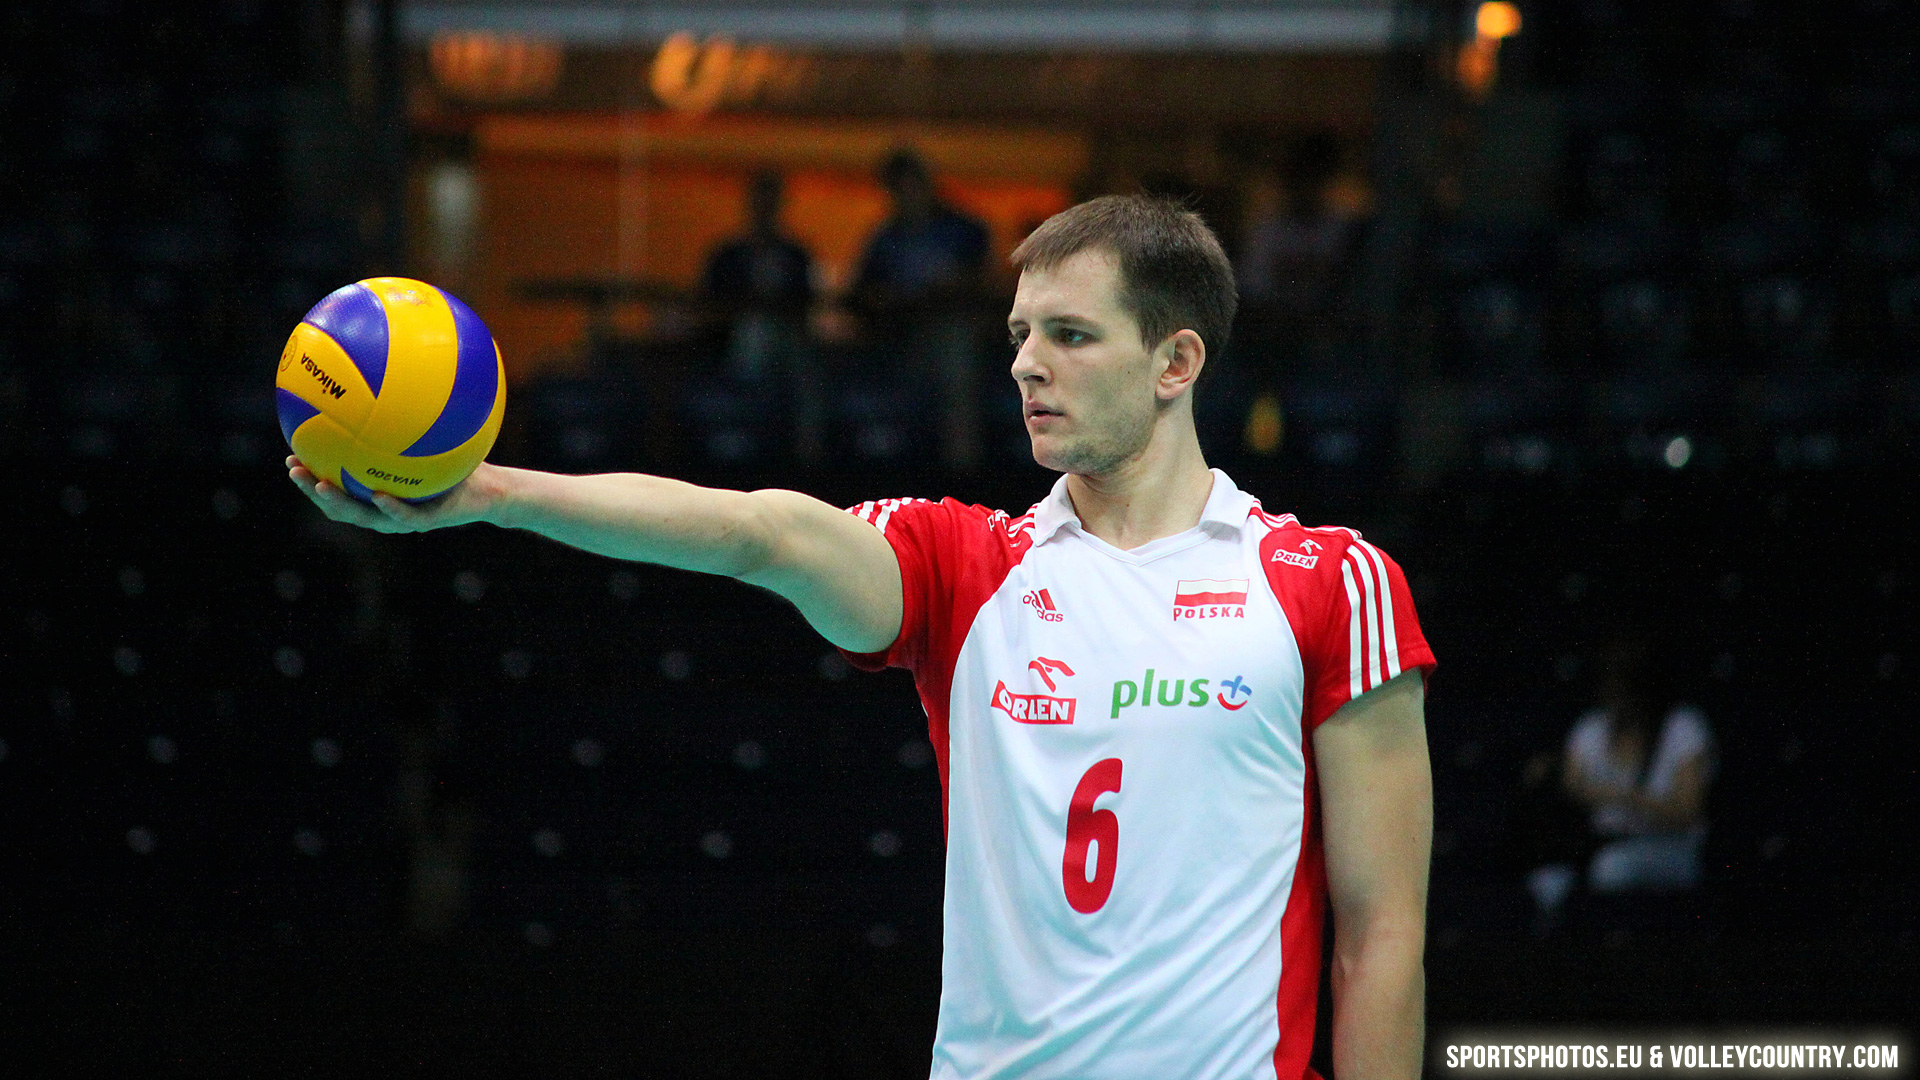 Bartosz Kurek - Volleyball Player - HD Wallpaper 